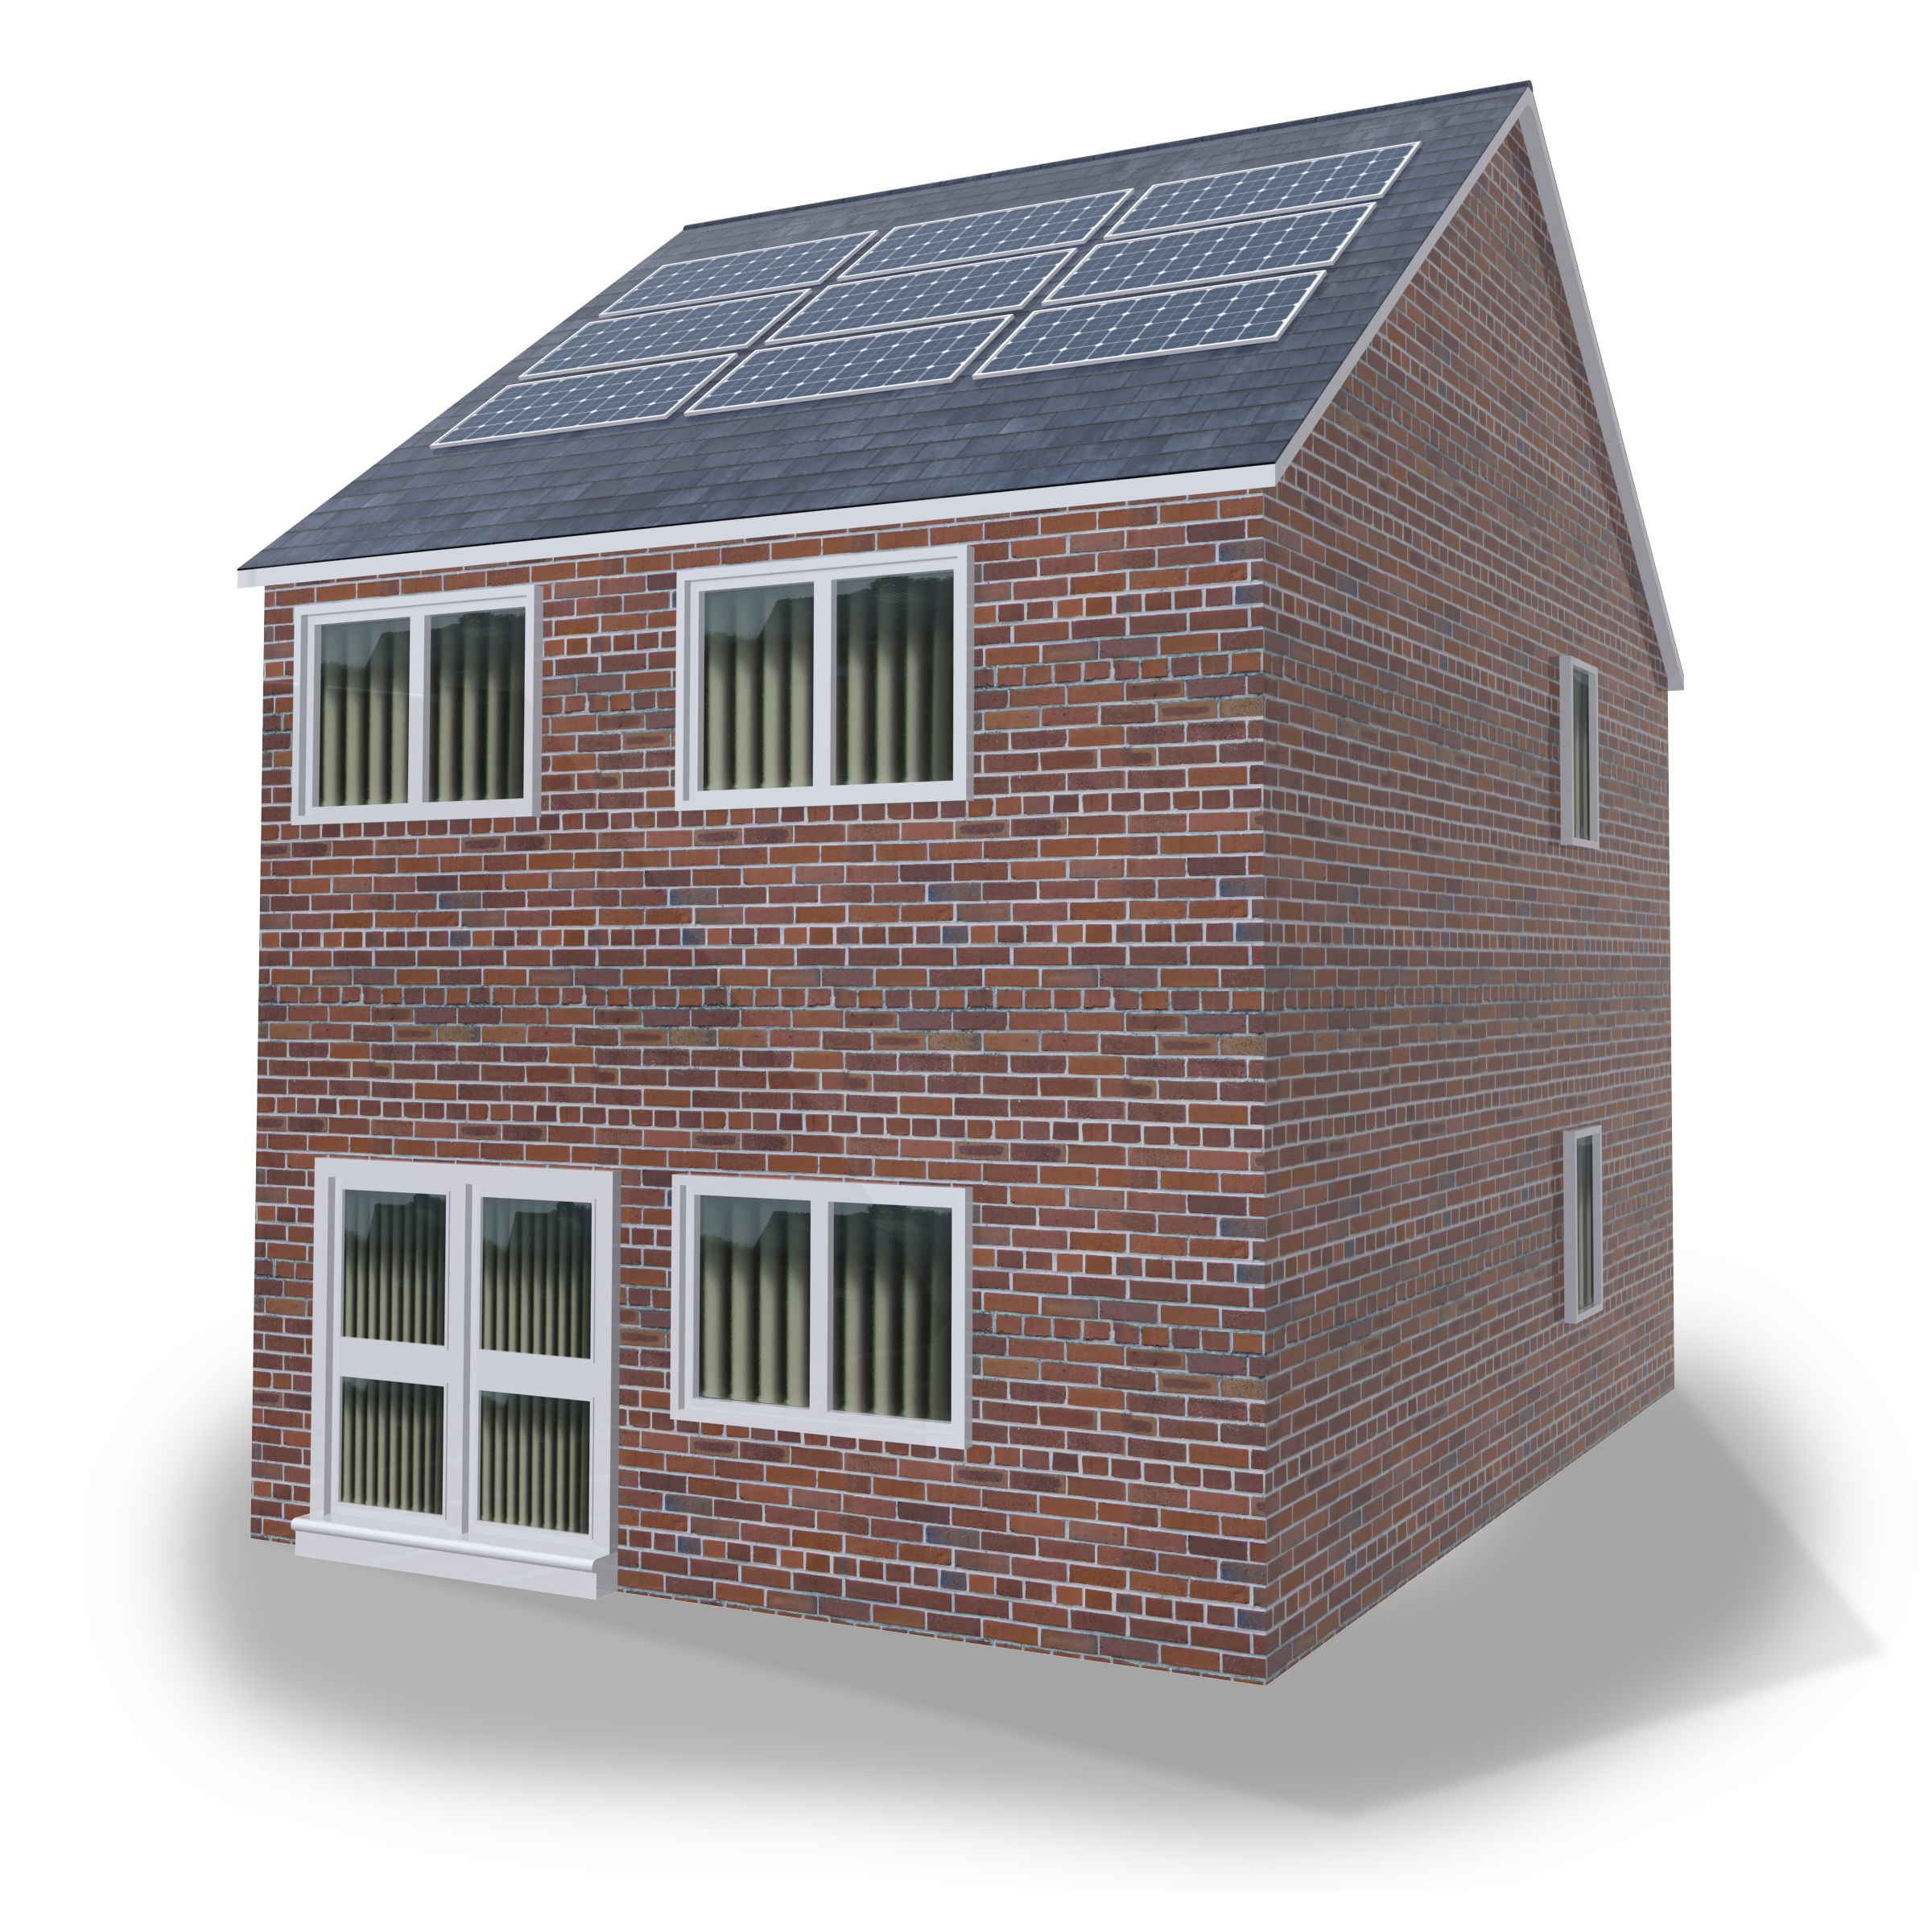 Nuable Solar home